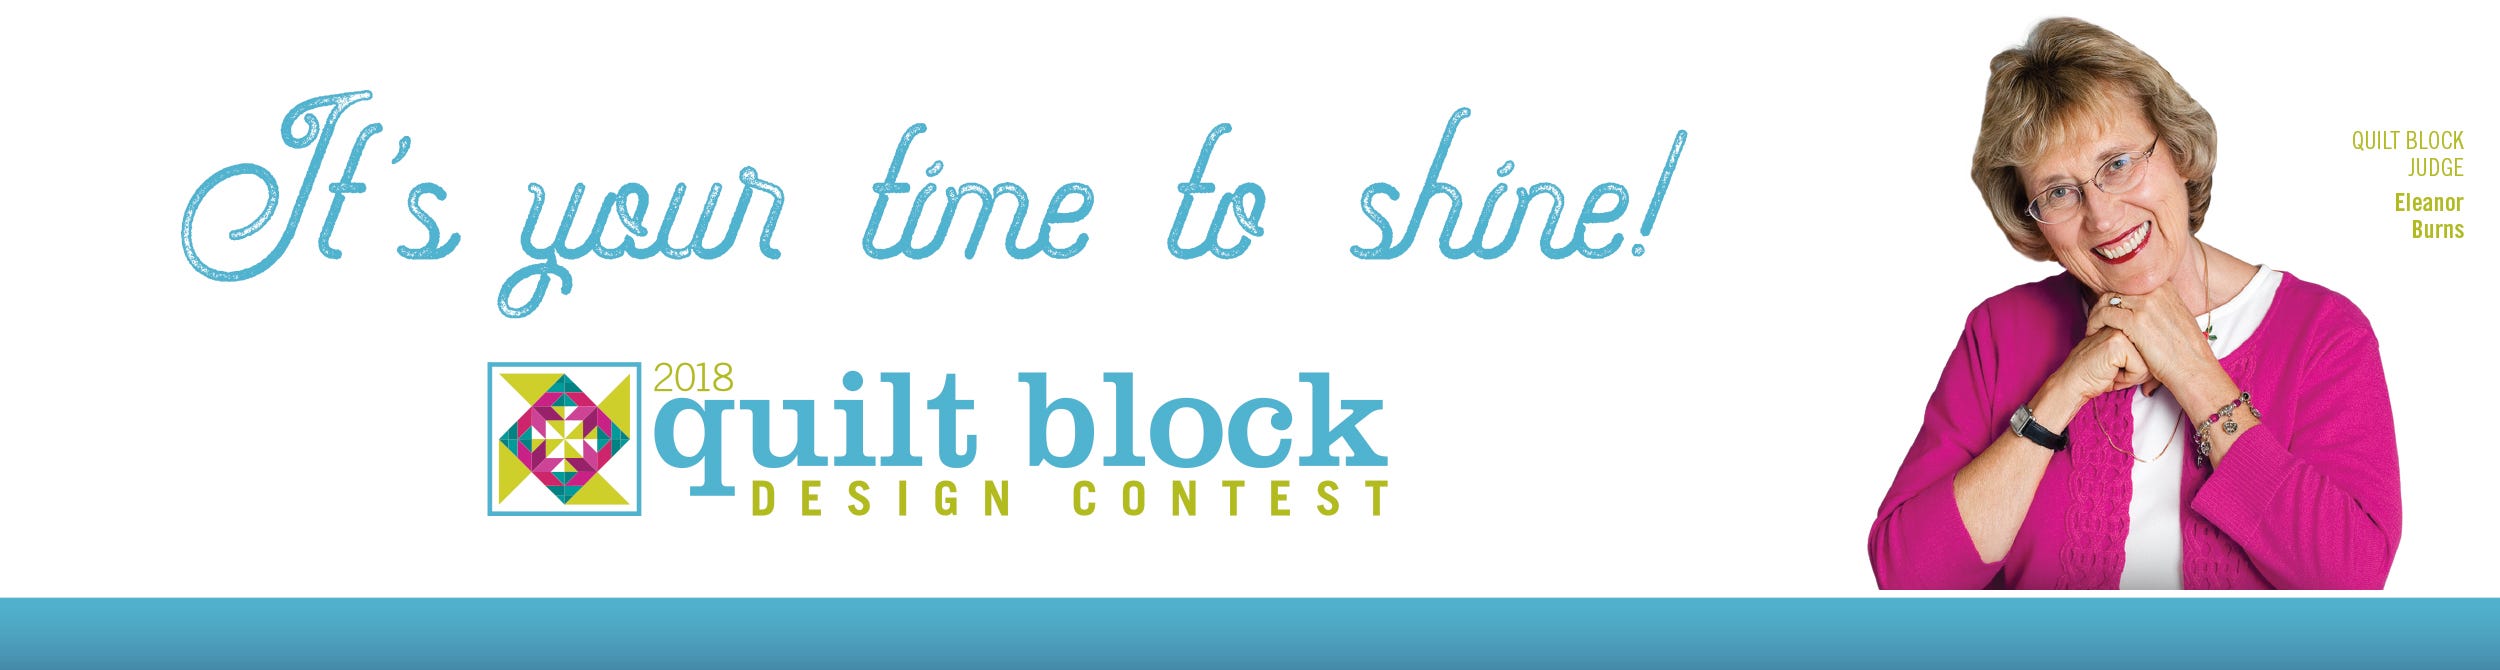 2018 Quilt Block Design Contest